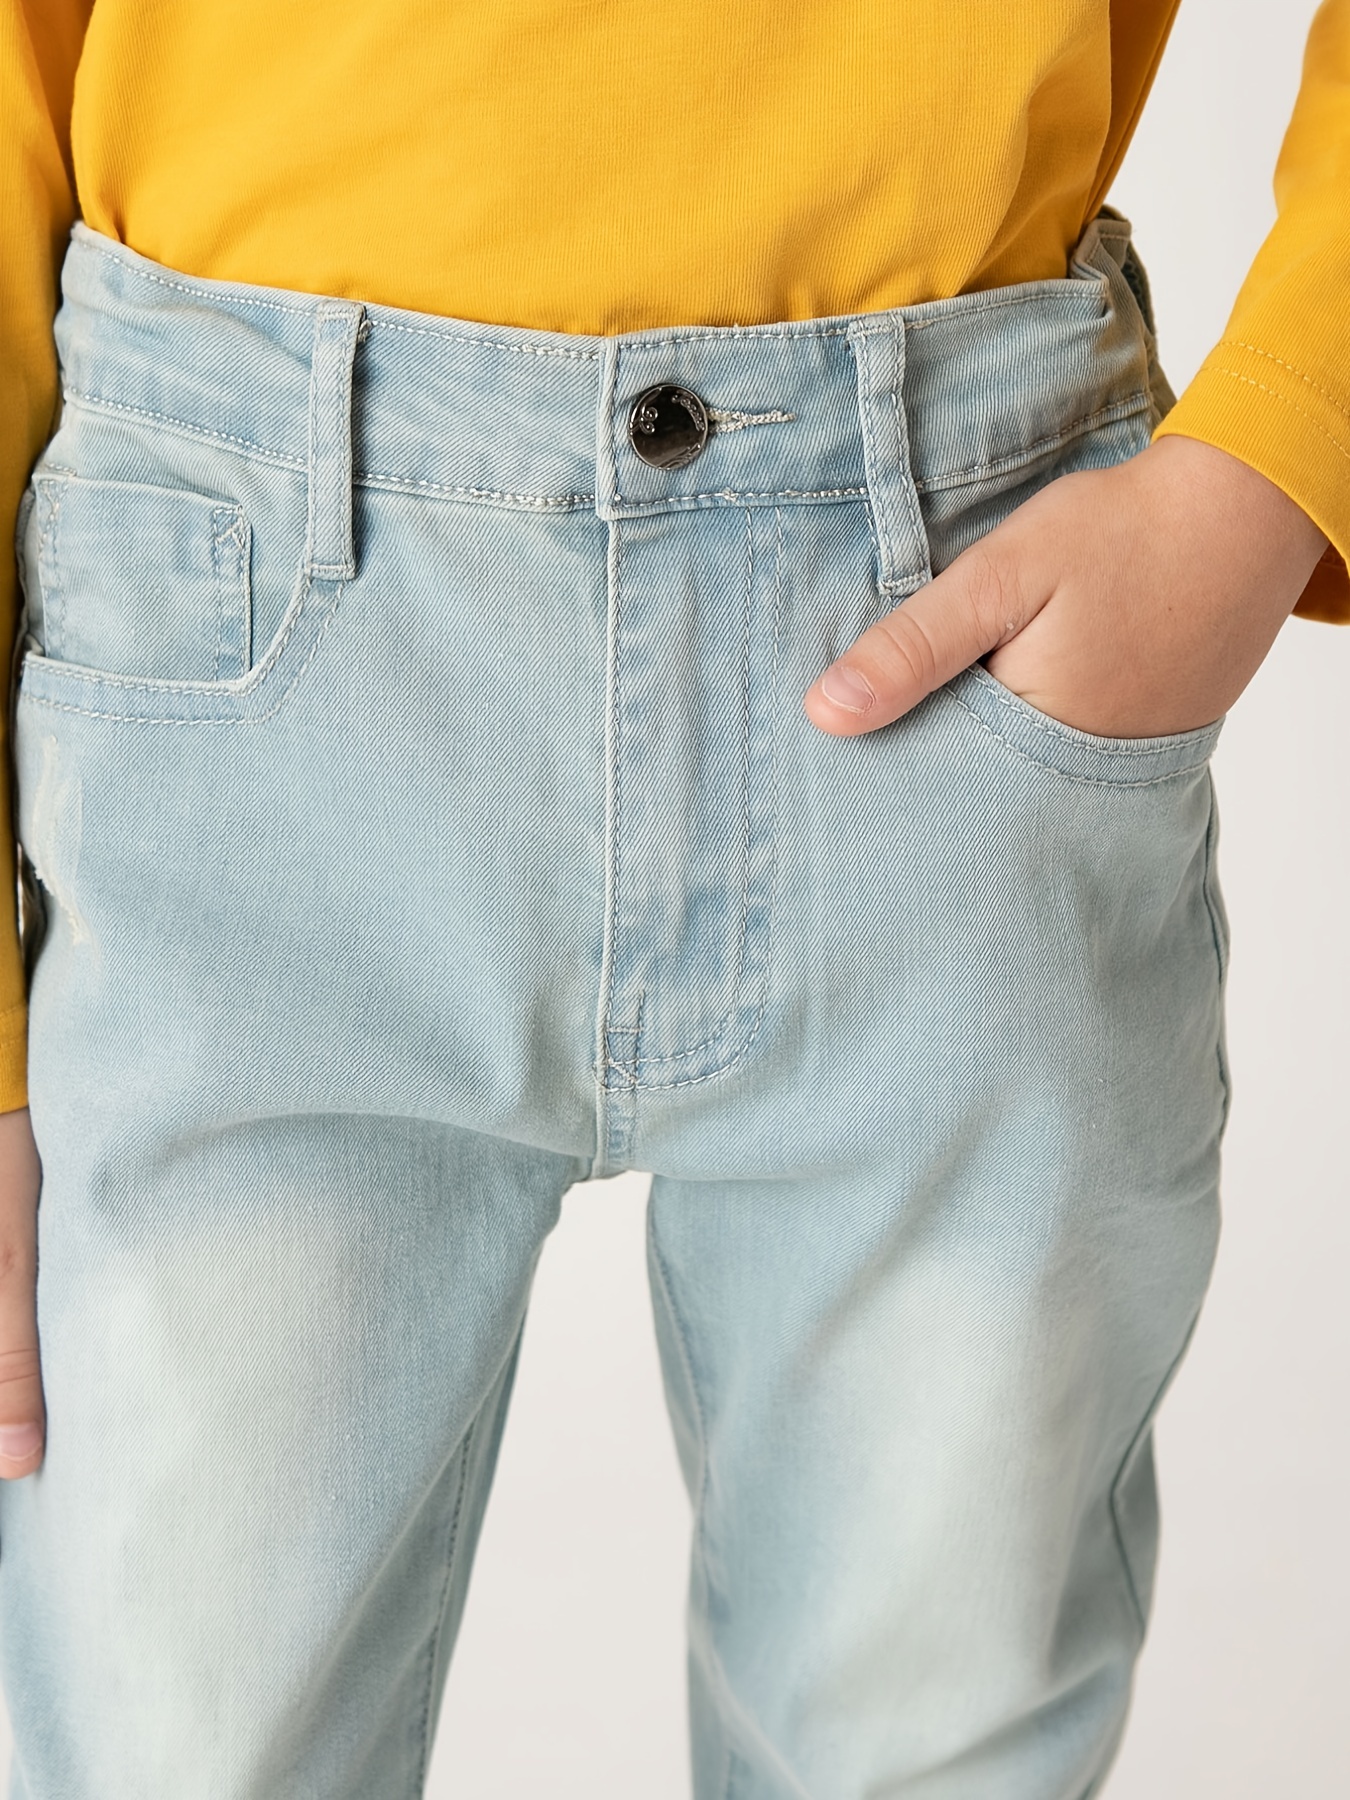 Boys Casual Simple Vintage Denim Jeans, Slim Fit Light Blue Pants